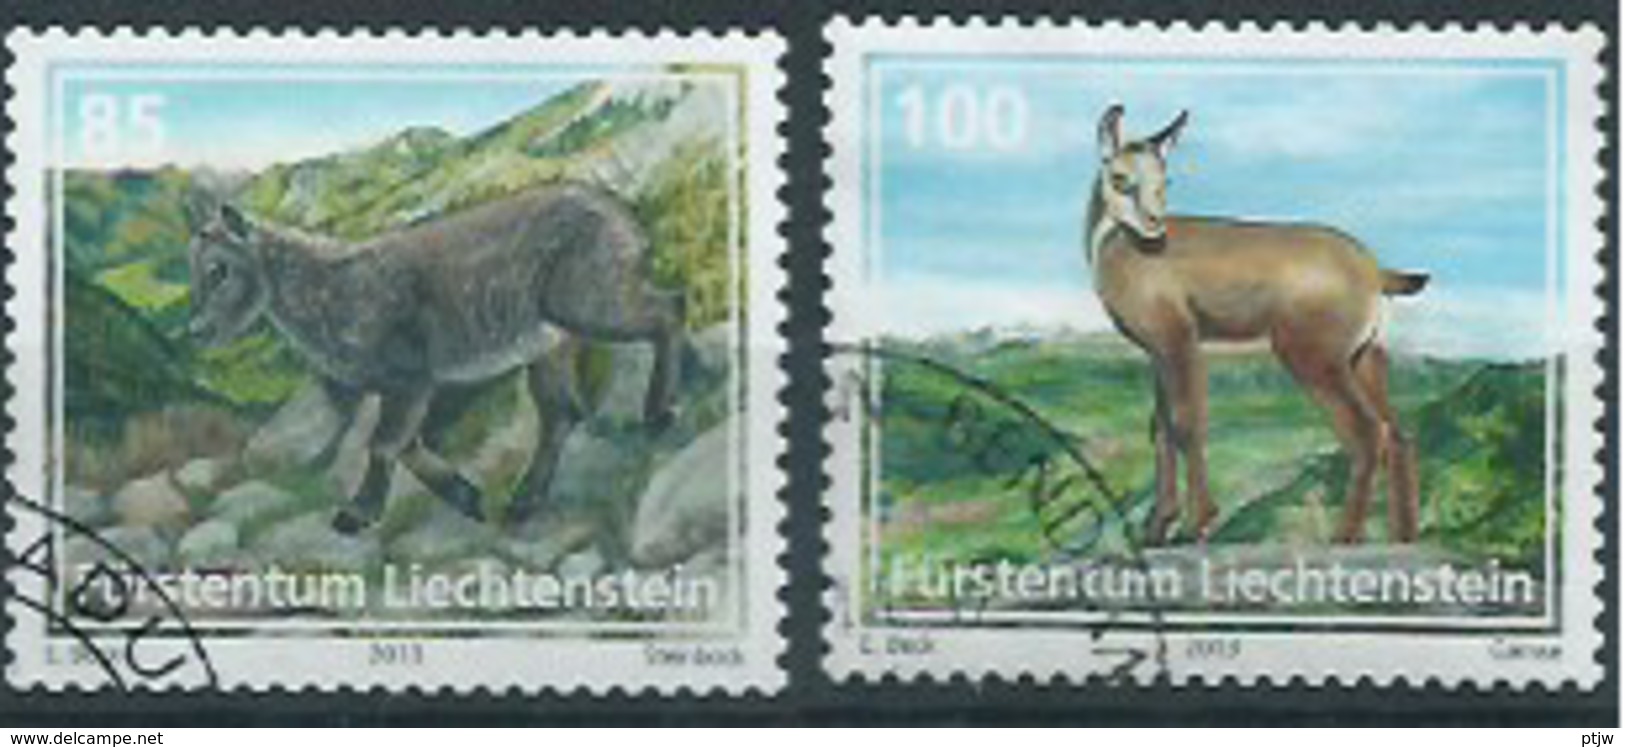 Stamp Of Liechtenstein 2013: Animals 0.85 + 1.00 Used - Nature - Animaux - Oblitere - Gebruikt